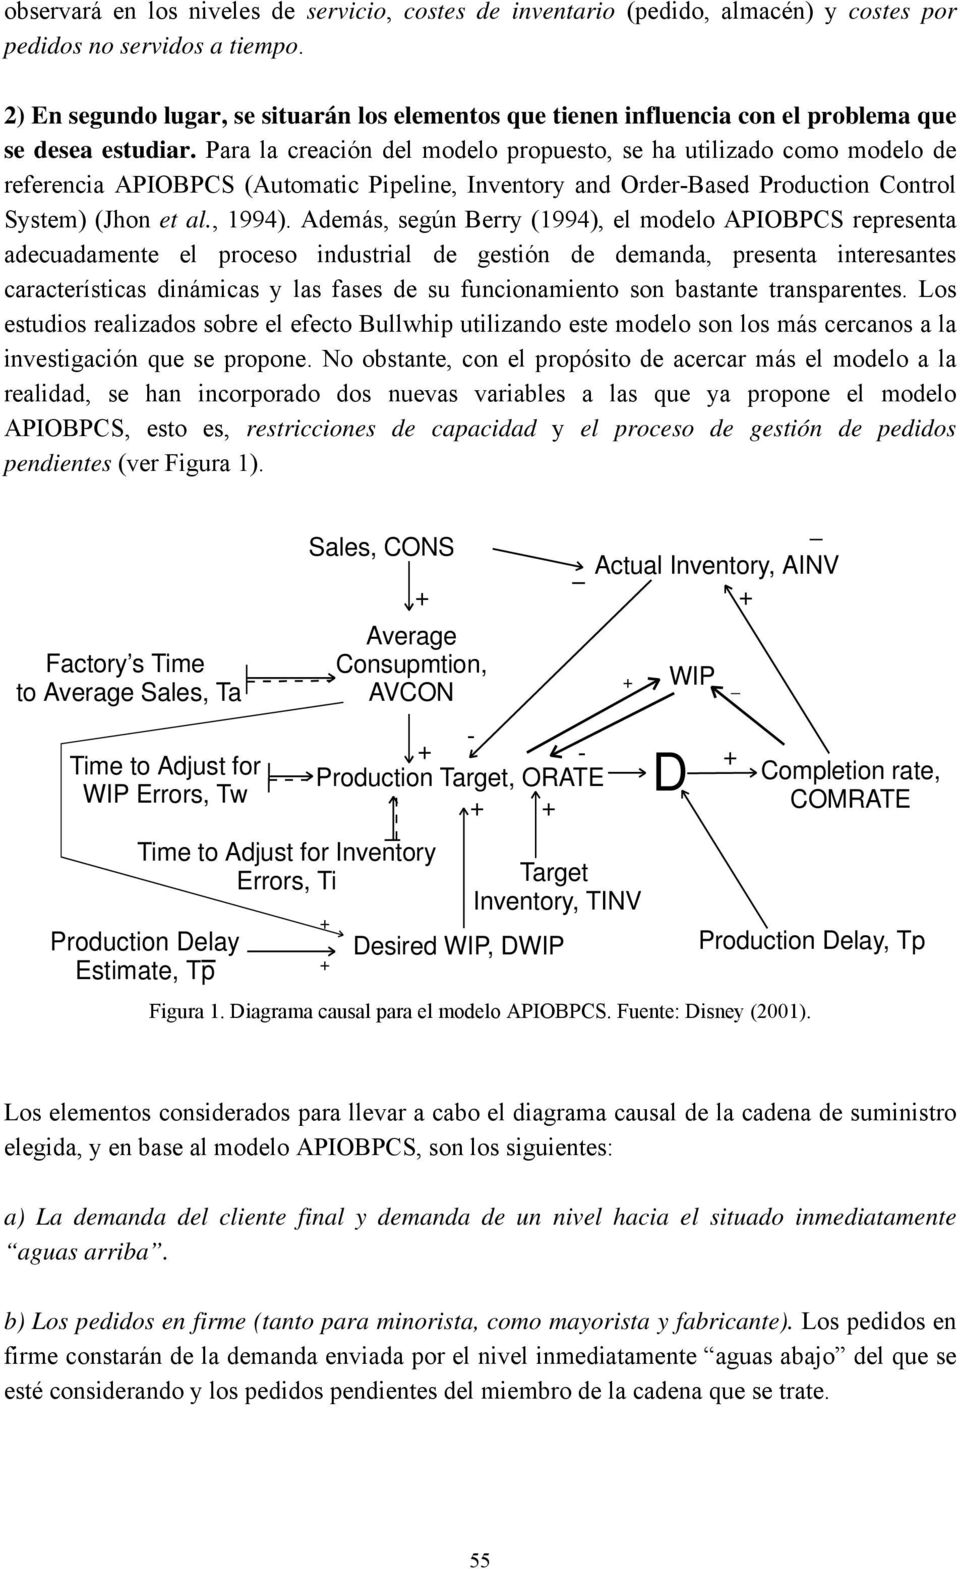 Para la creación del modelo propuesto, se ha utilizado como modelo de referencia APIOBPCS (Automatic Pipeline, Inventory and Order-Based Production Control System) (Jhon et al., 1994).